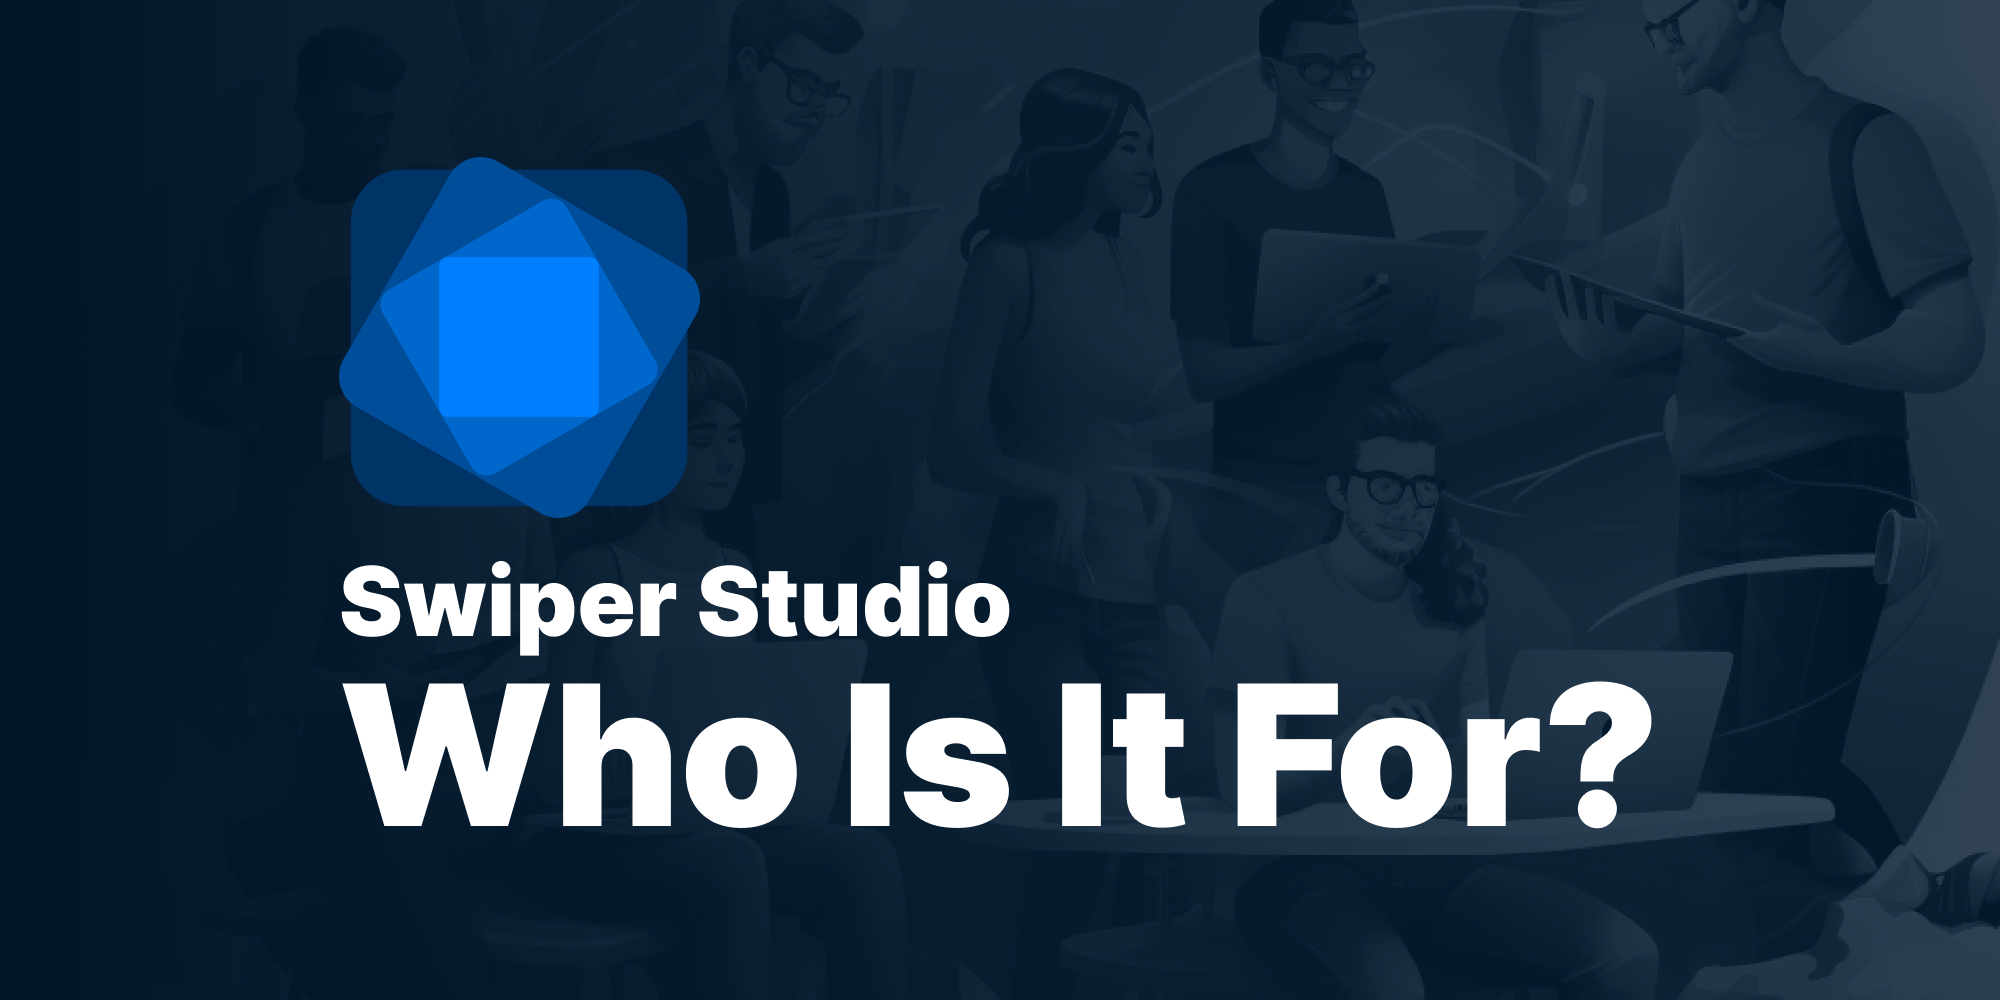 Swiper Studio: Who Is It For?